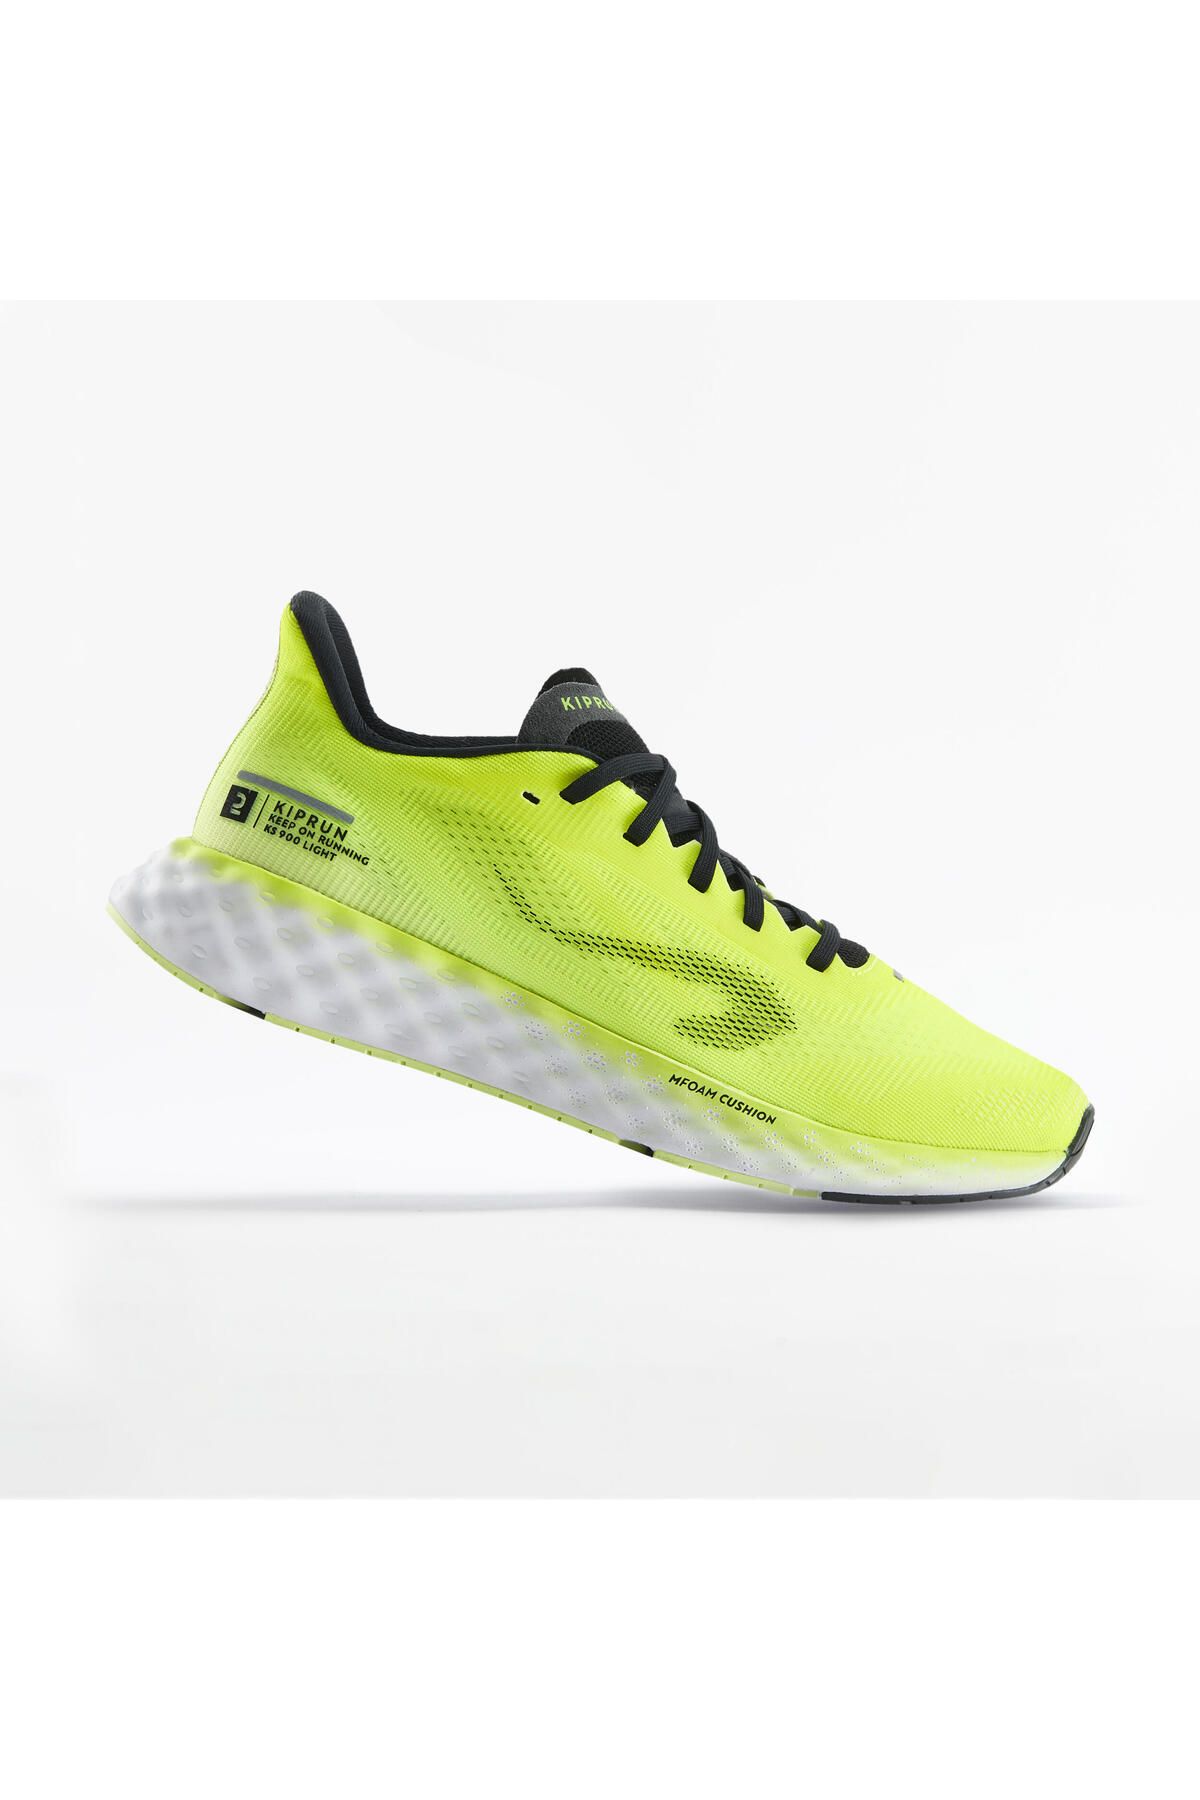 Decathlon Erkek Yol Koşu Ayakkabısı - Sarı - Ks900 Light